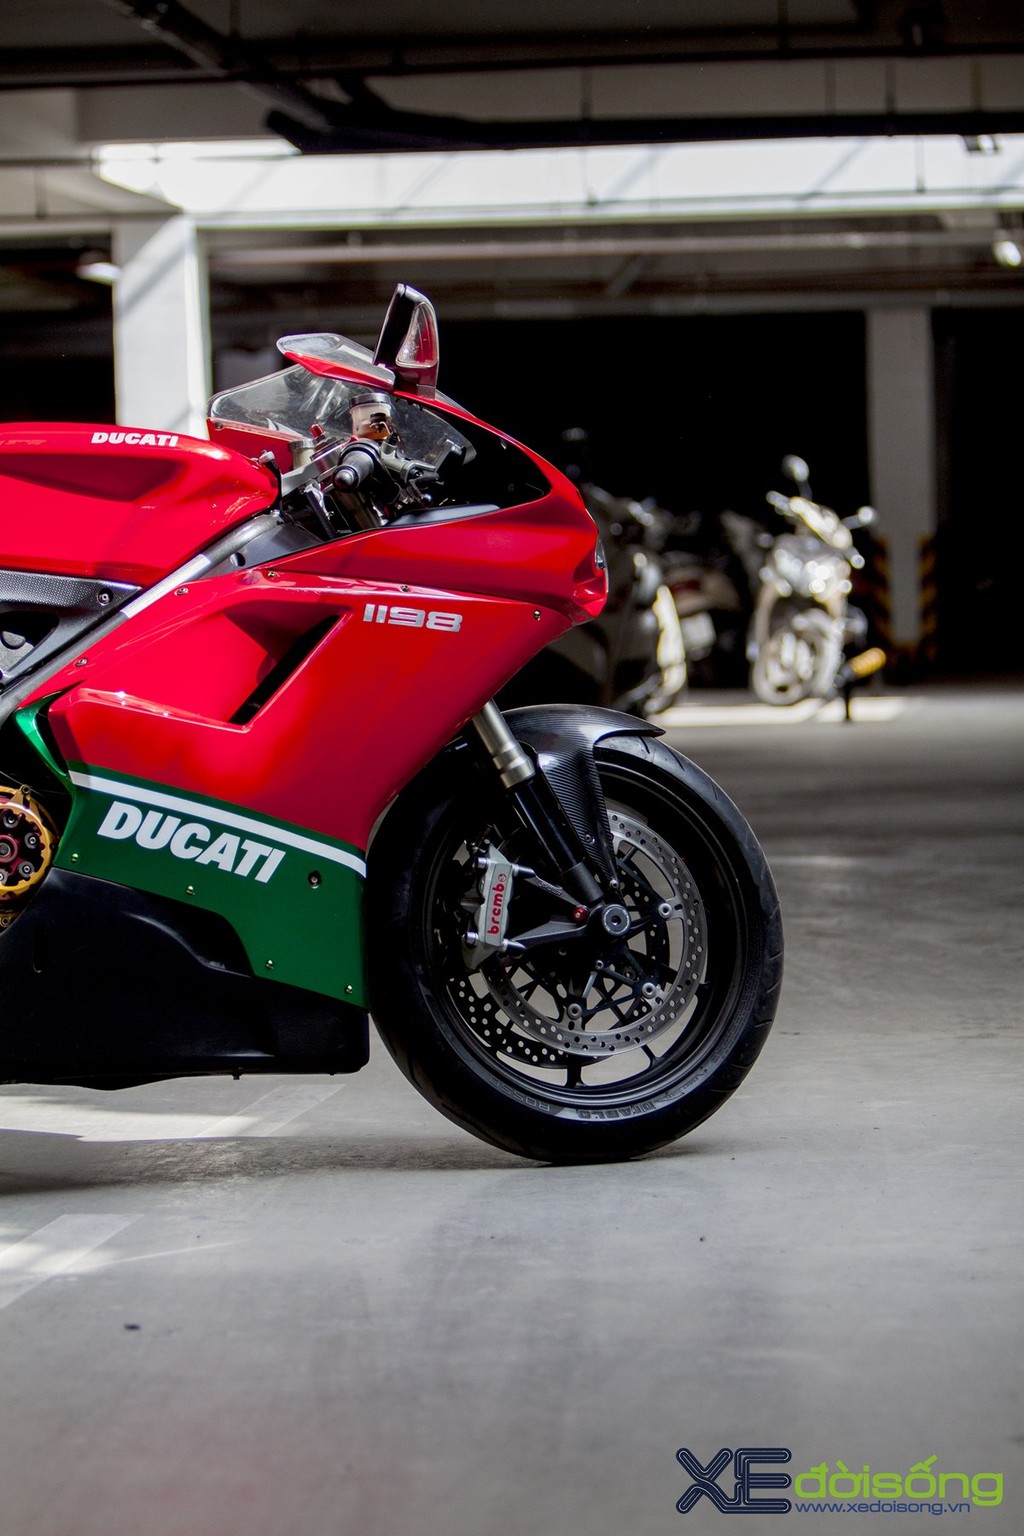 Ngắm Ducati 1198, huyền thoại trong làng Super Bike xi-lanh đôi ảnh 8